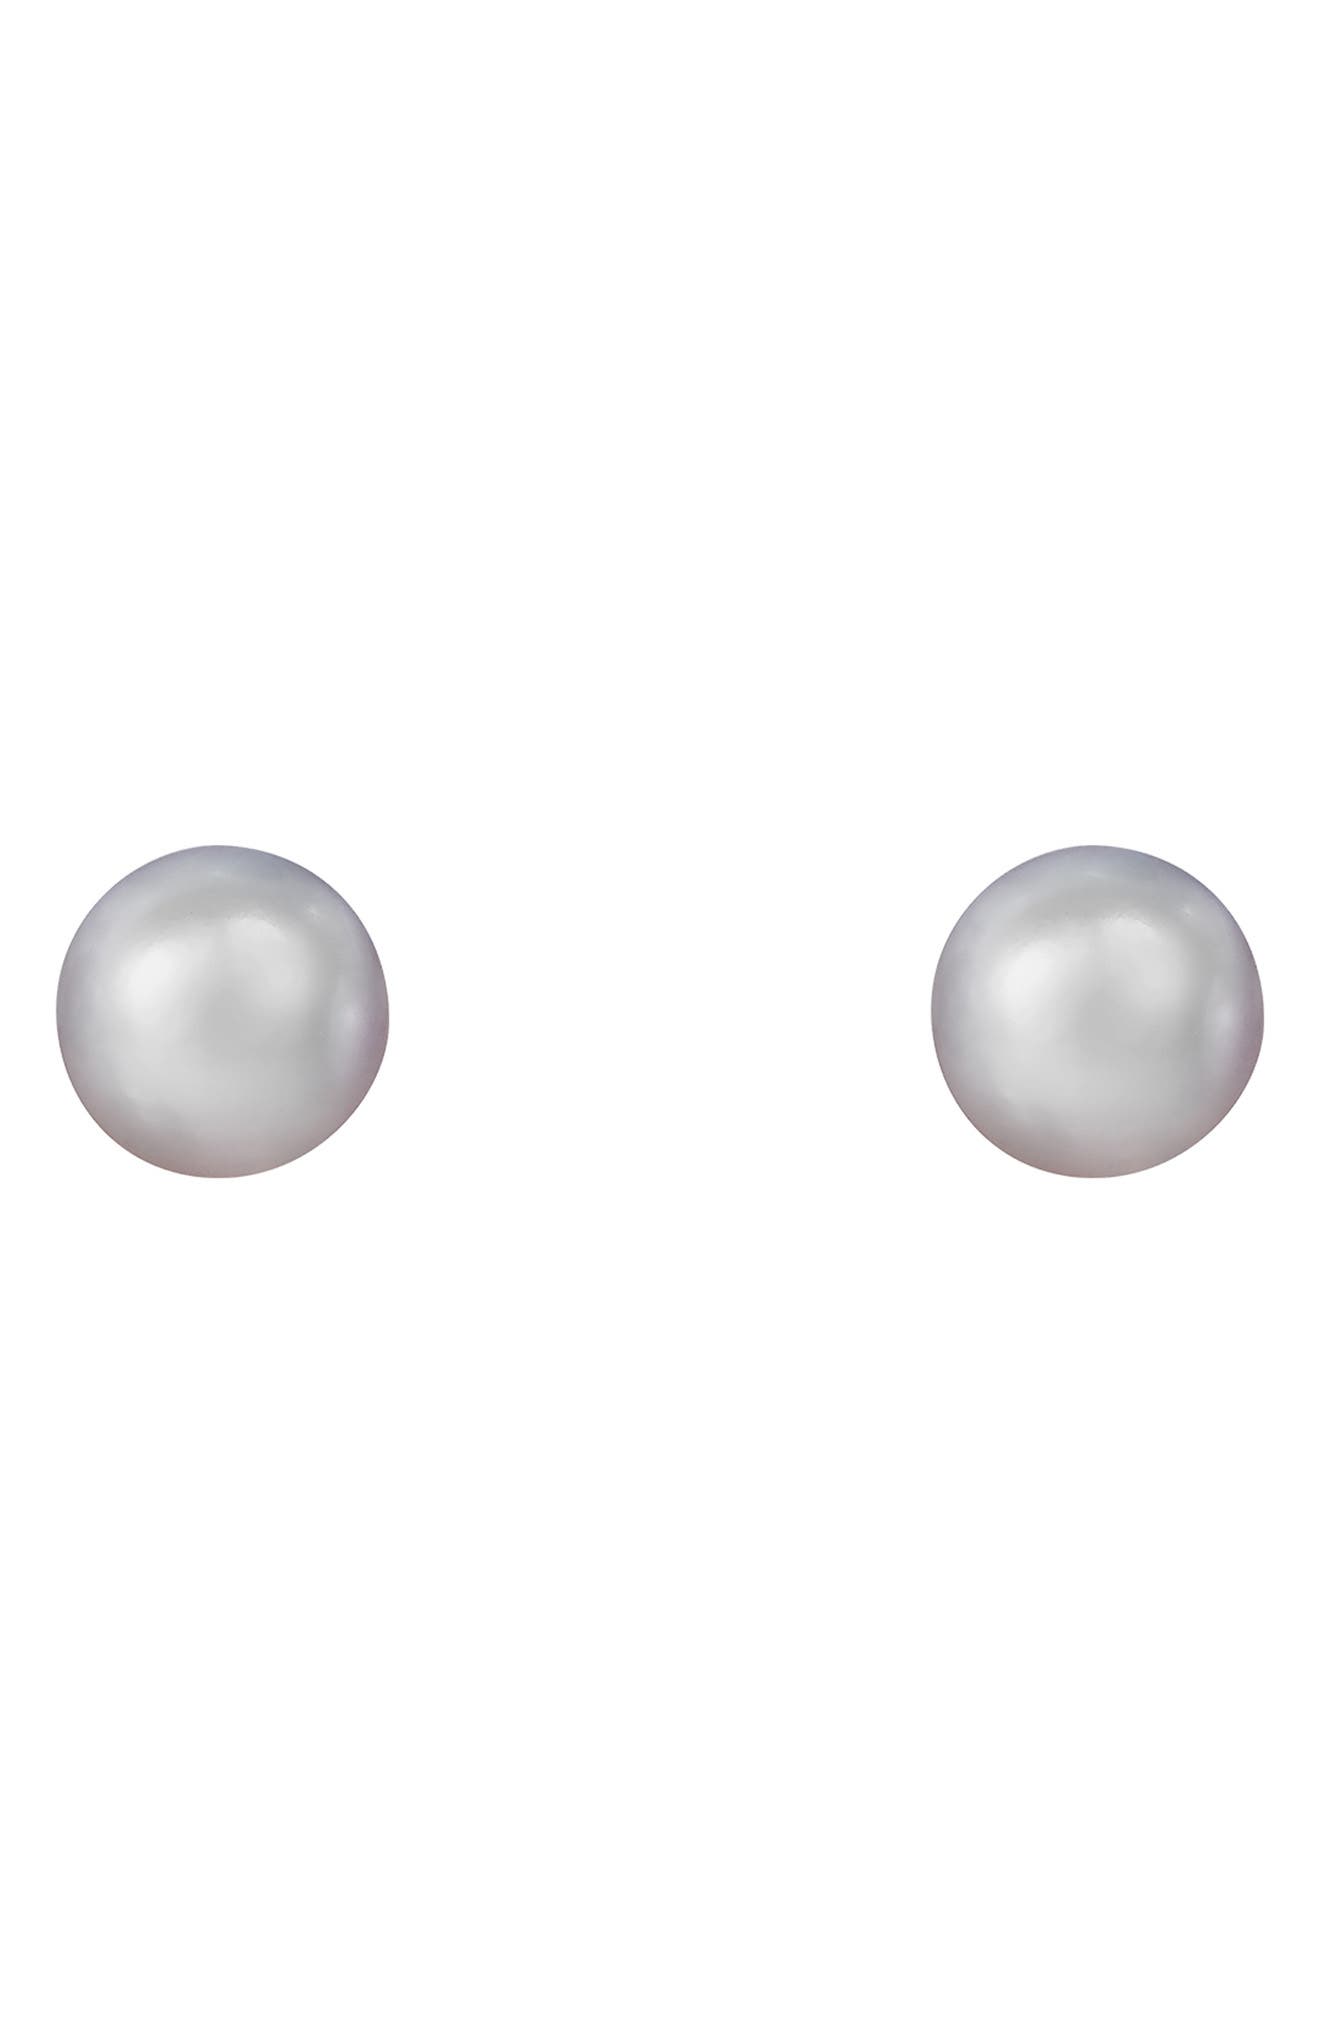 Splendid Pearls 8mm Gray Freshwater Pearl Round Stud Earrings